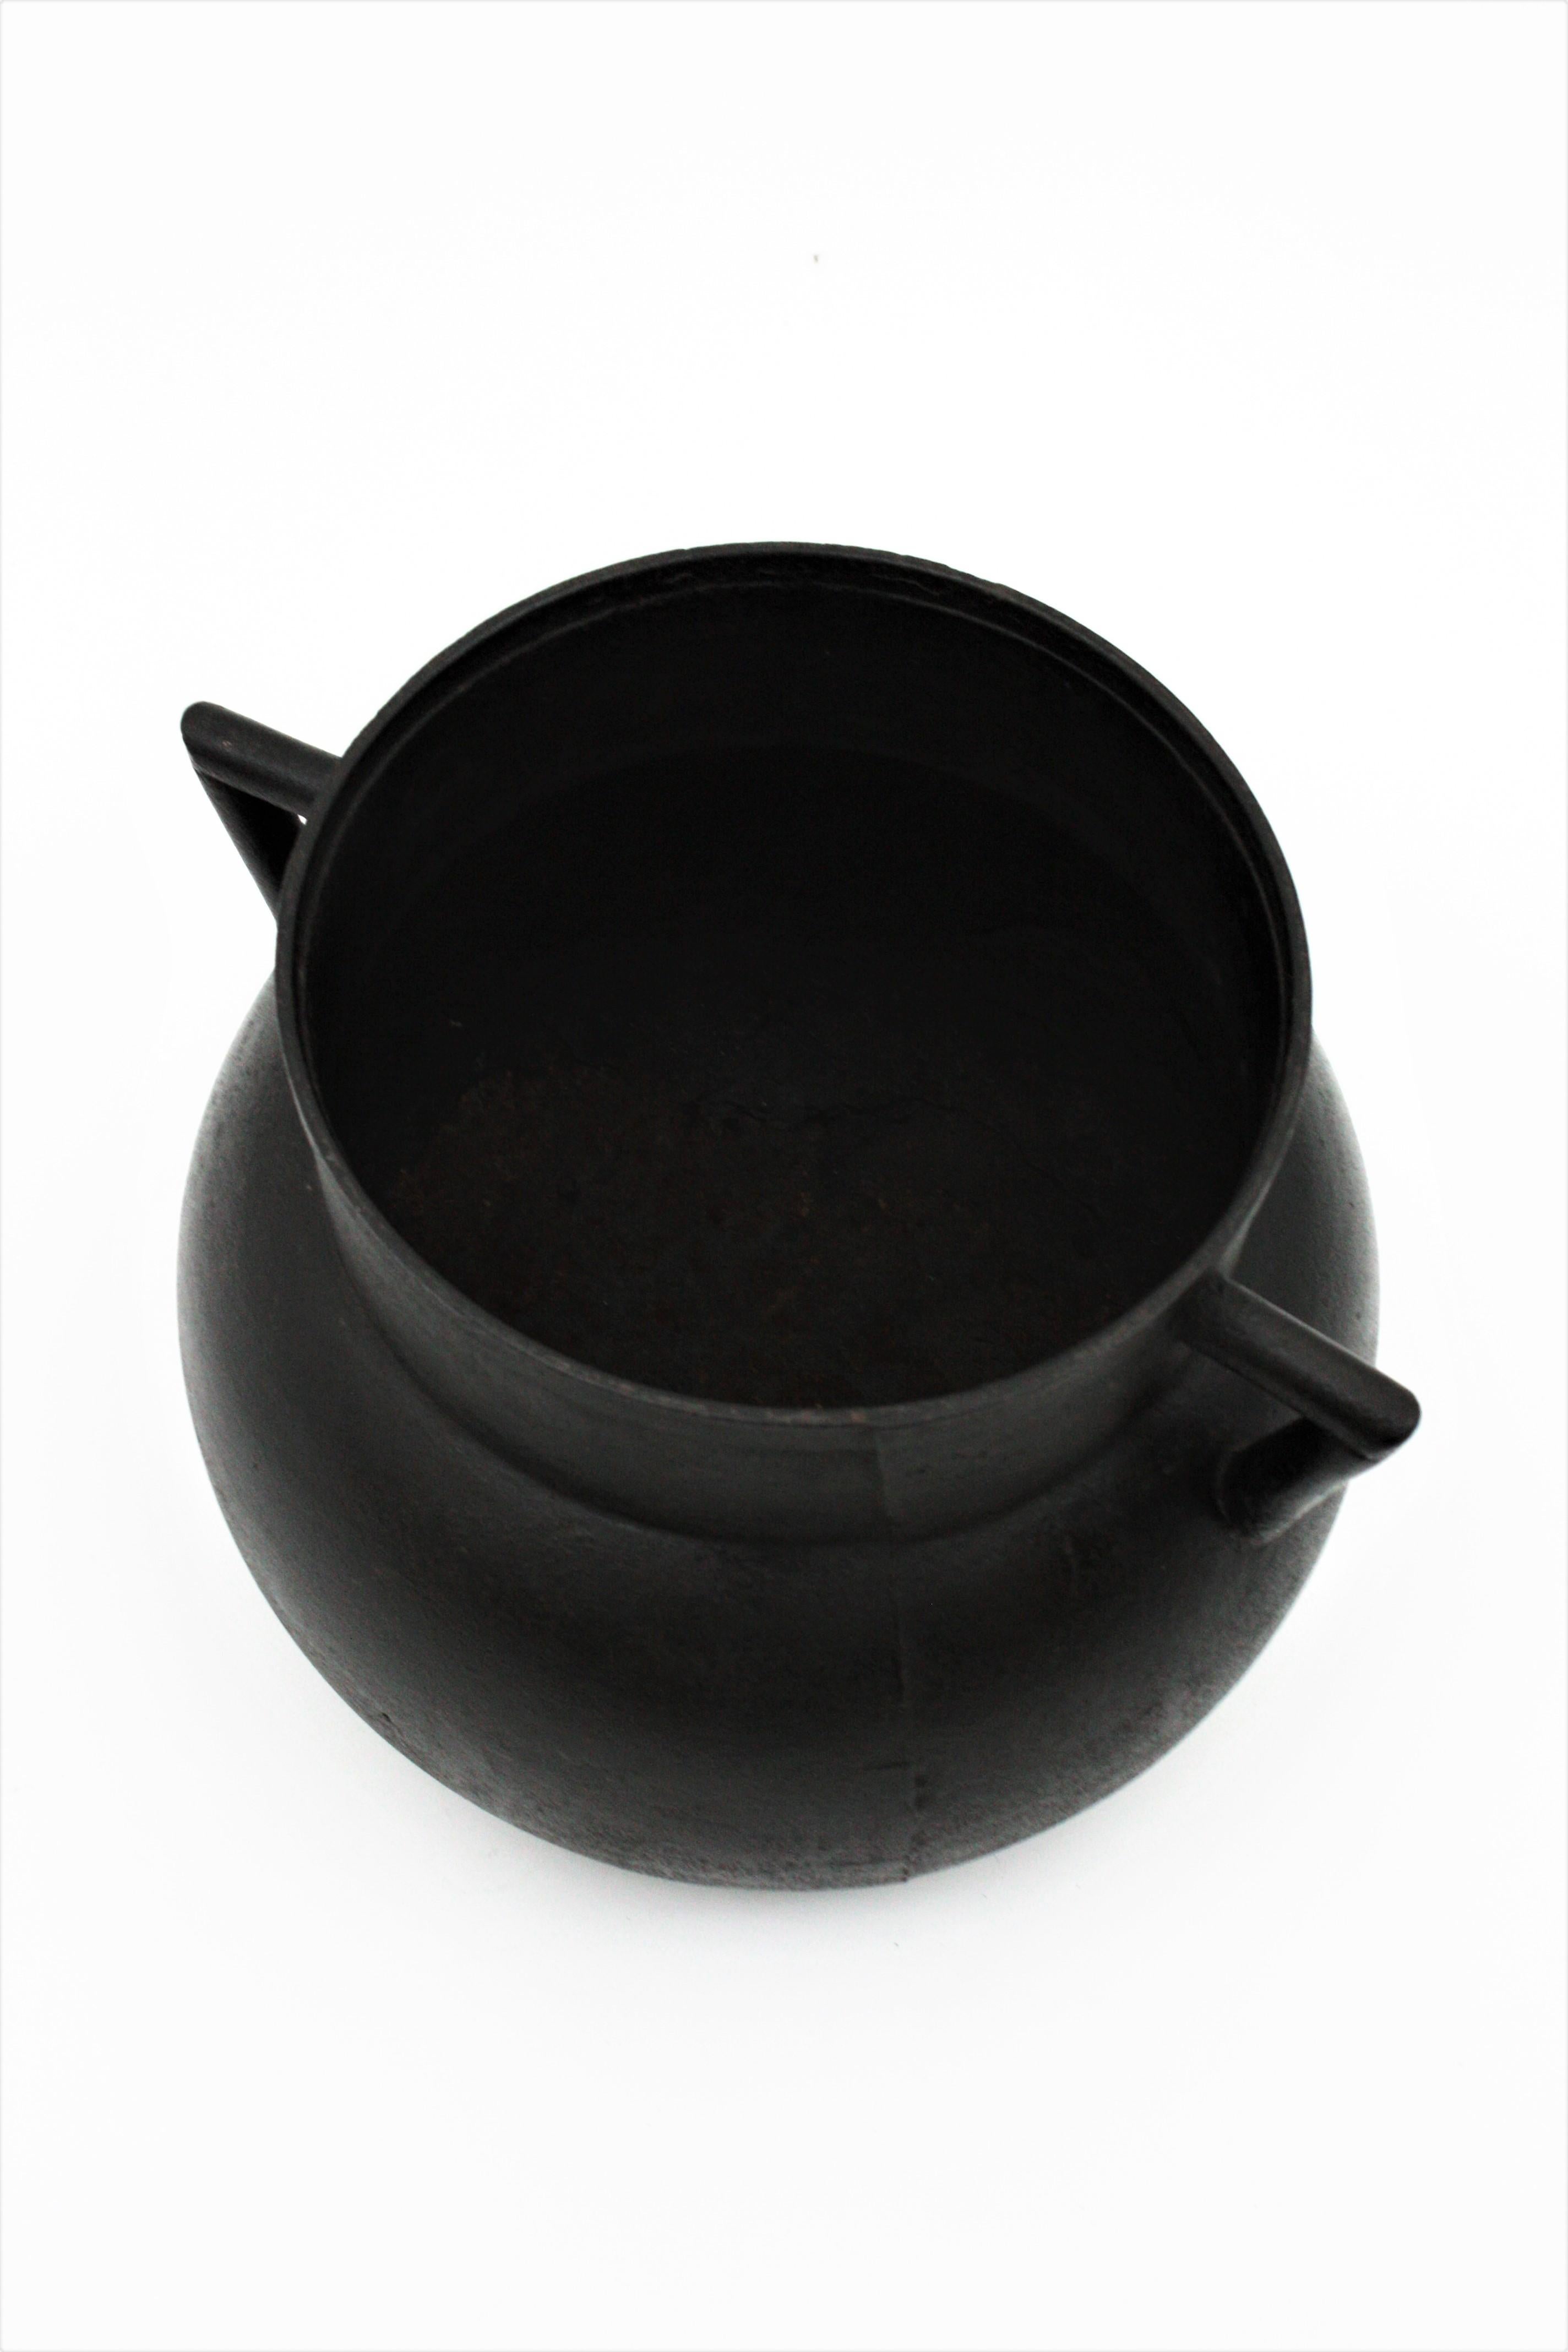 Spanish Cast Iron Cauldron Pot or Vessel For Sale 7